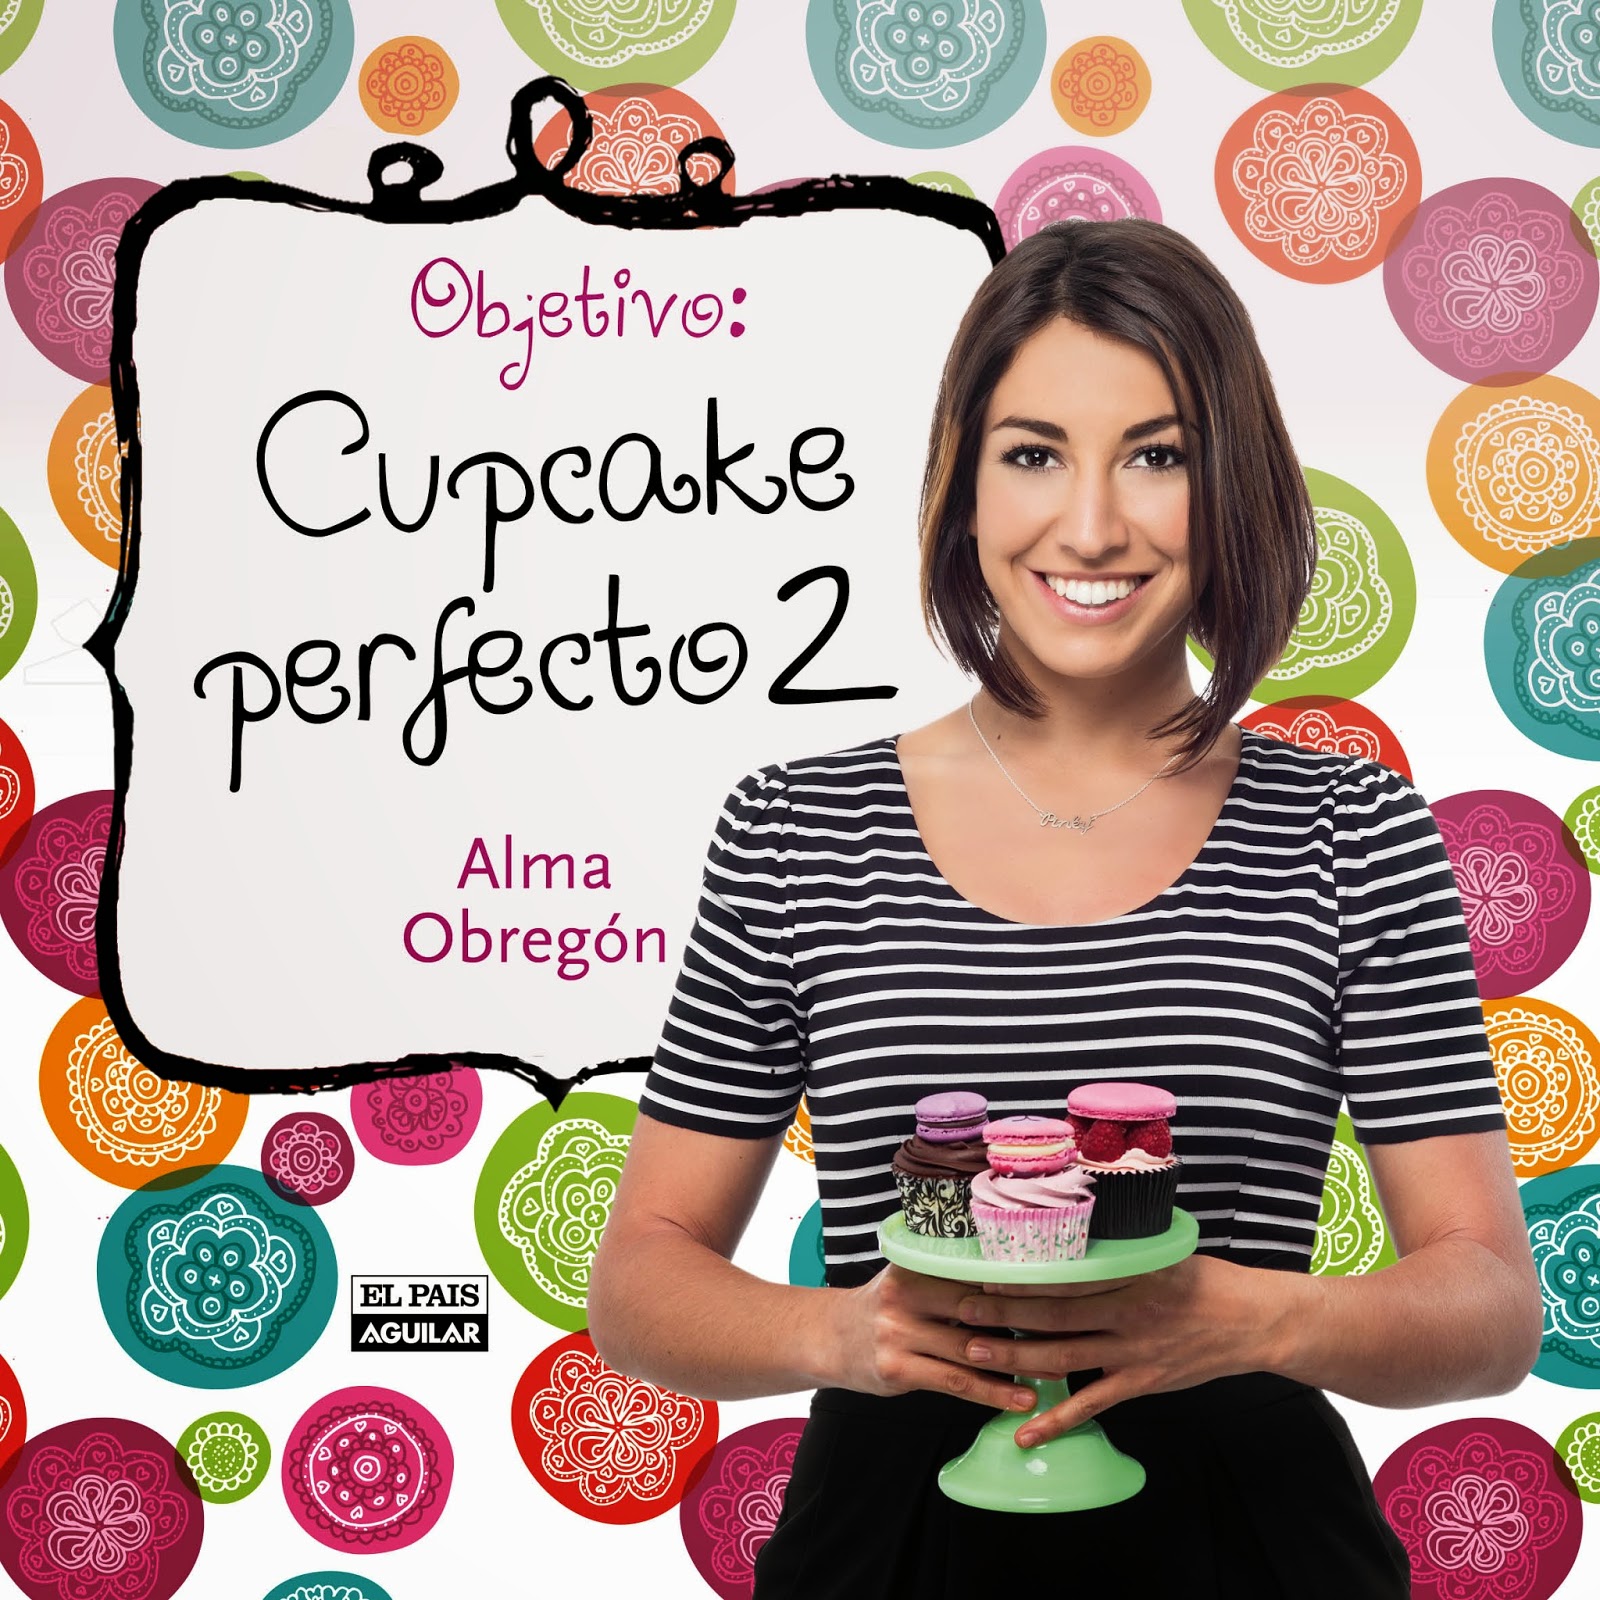 alma-obregon-objetivo-cupcake2